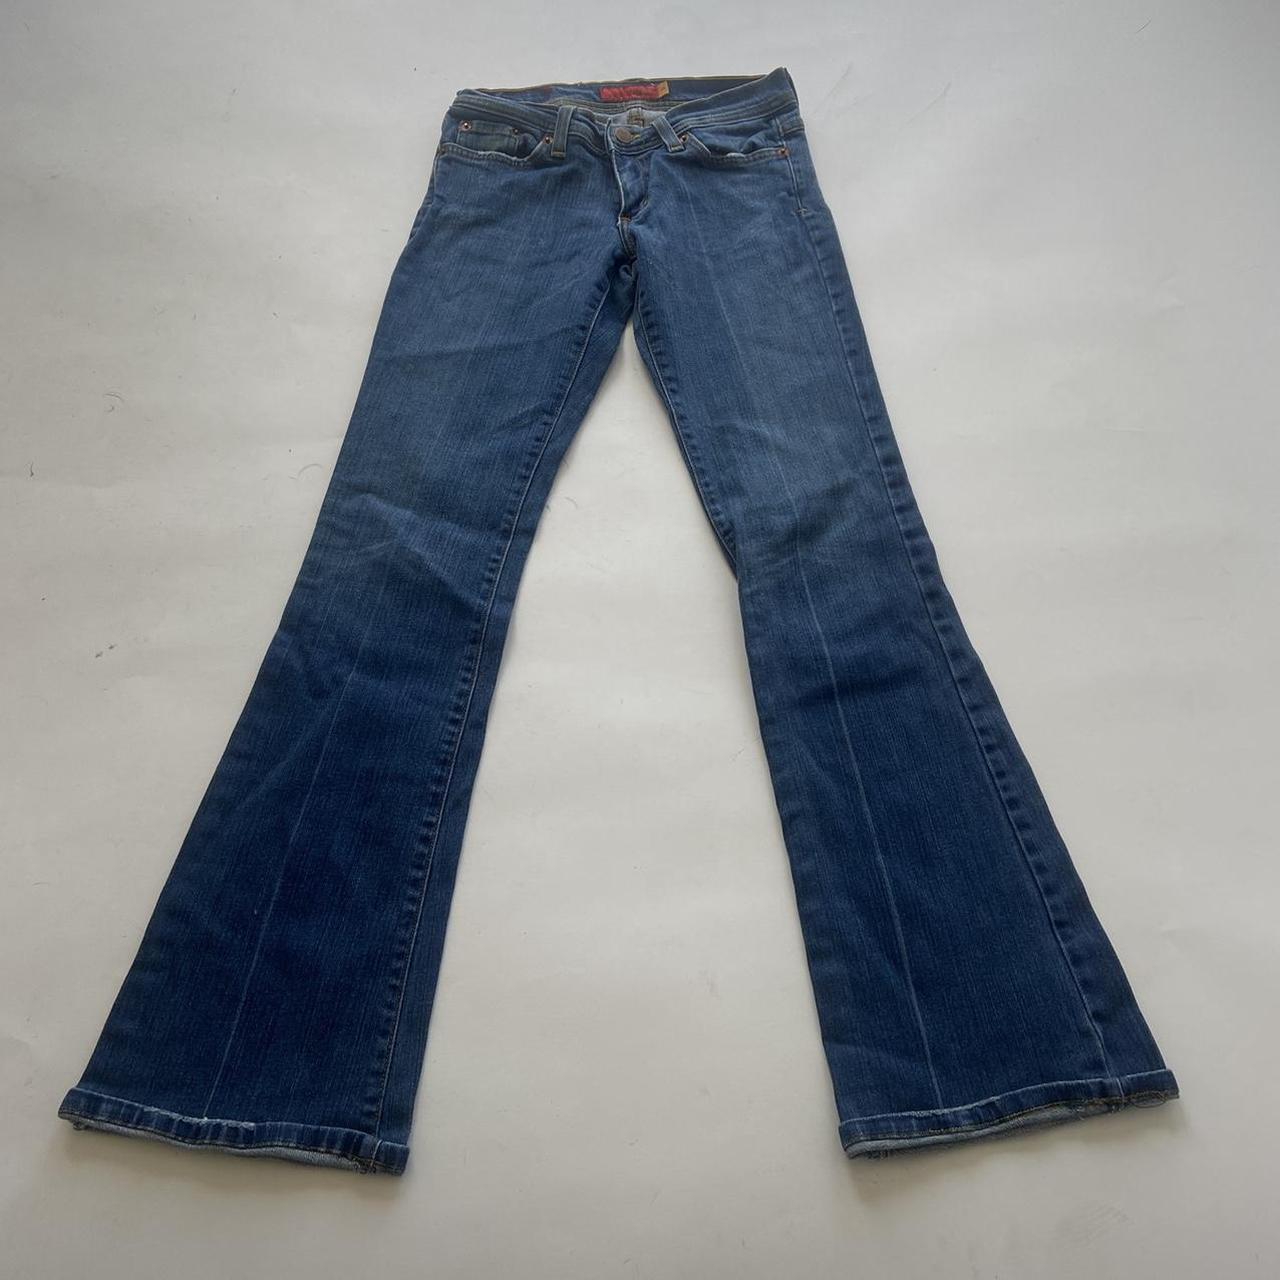 Vintage Y2k low rise flare jeans •denim... - Depop